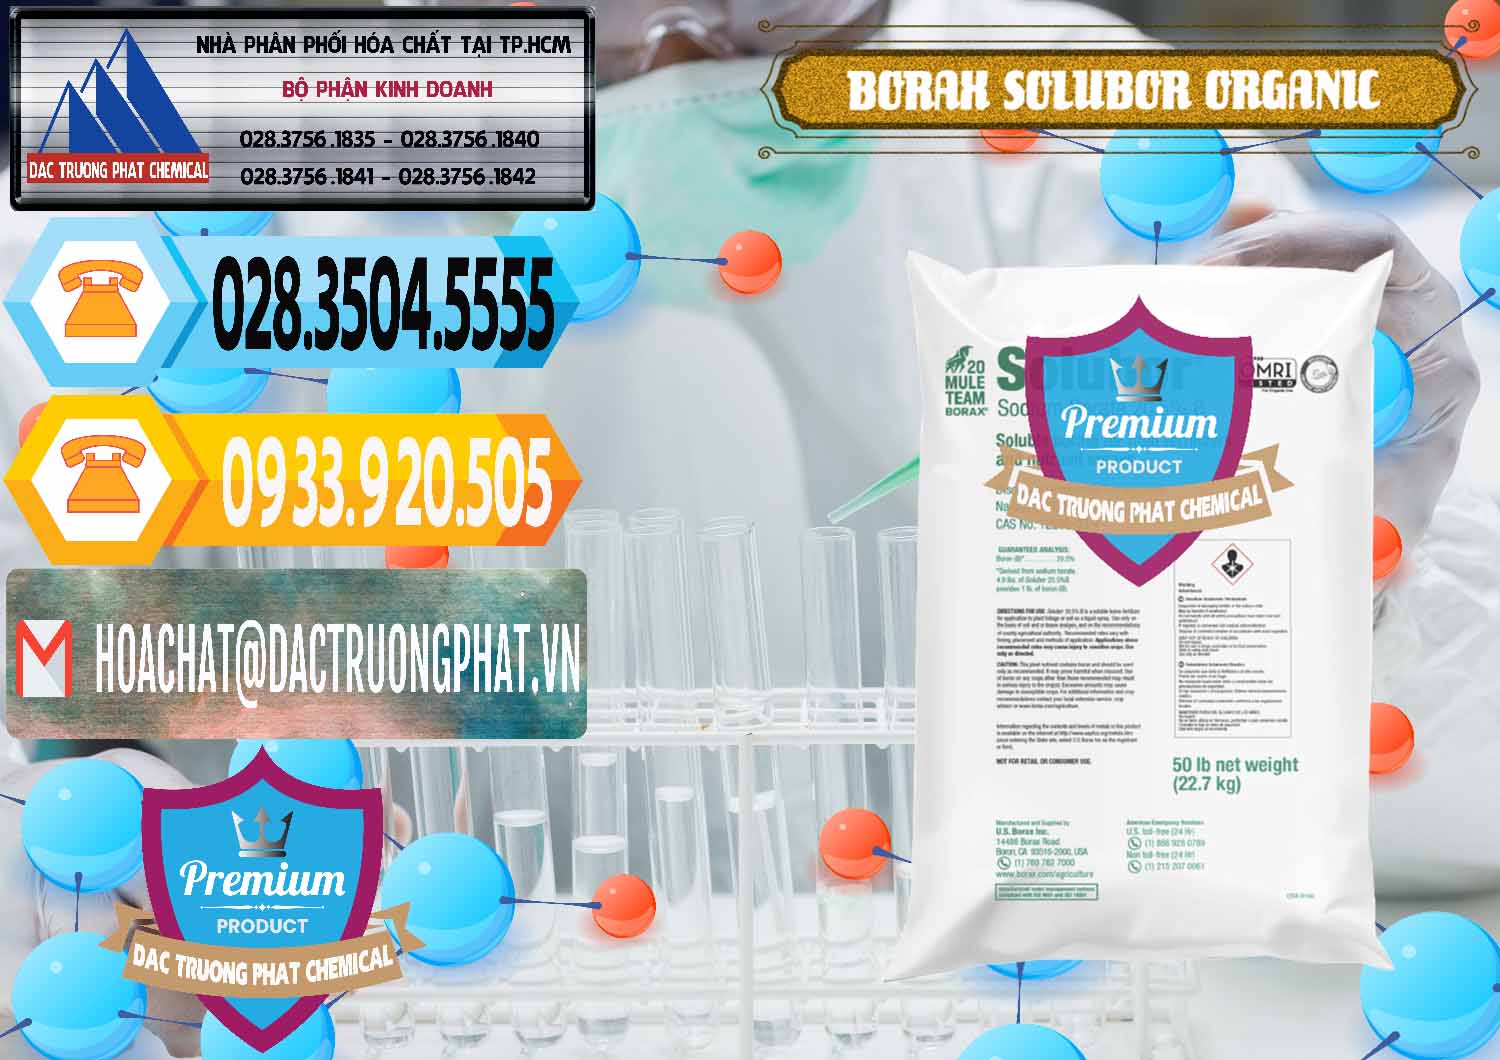 Nơi bán _ cung cấp Borax Hữu Cơ Solubor Organic Mỹ Usa - Mule 20 Team - 0458 - Nhập khẩu ( cung cấp ) hóa chất tại TP.HCM - hoachattayrua.net